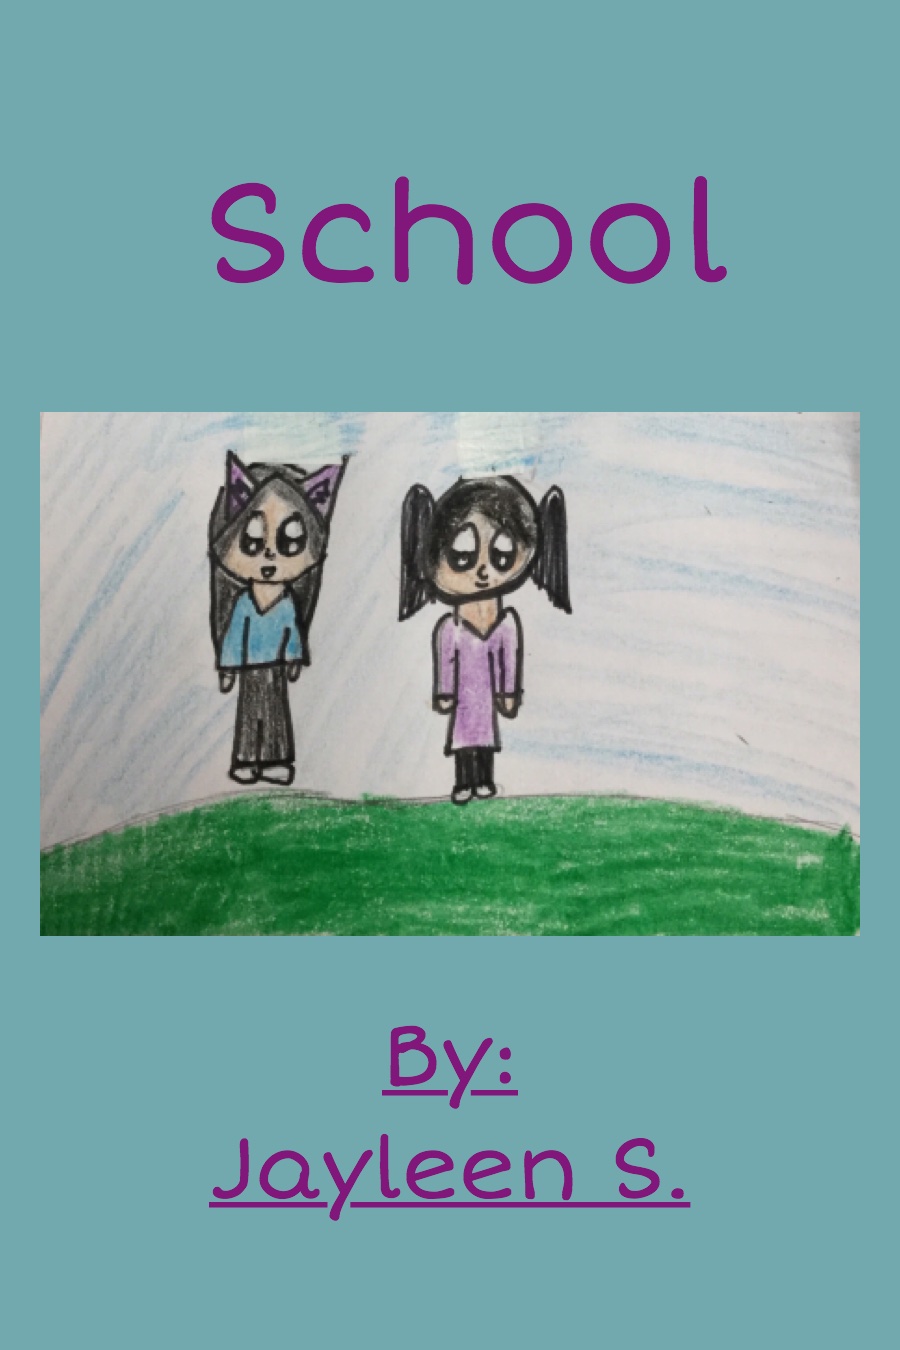 School by Jayleen S